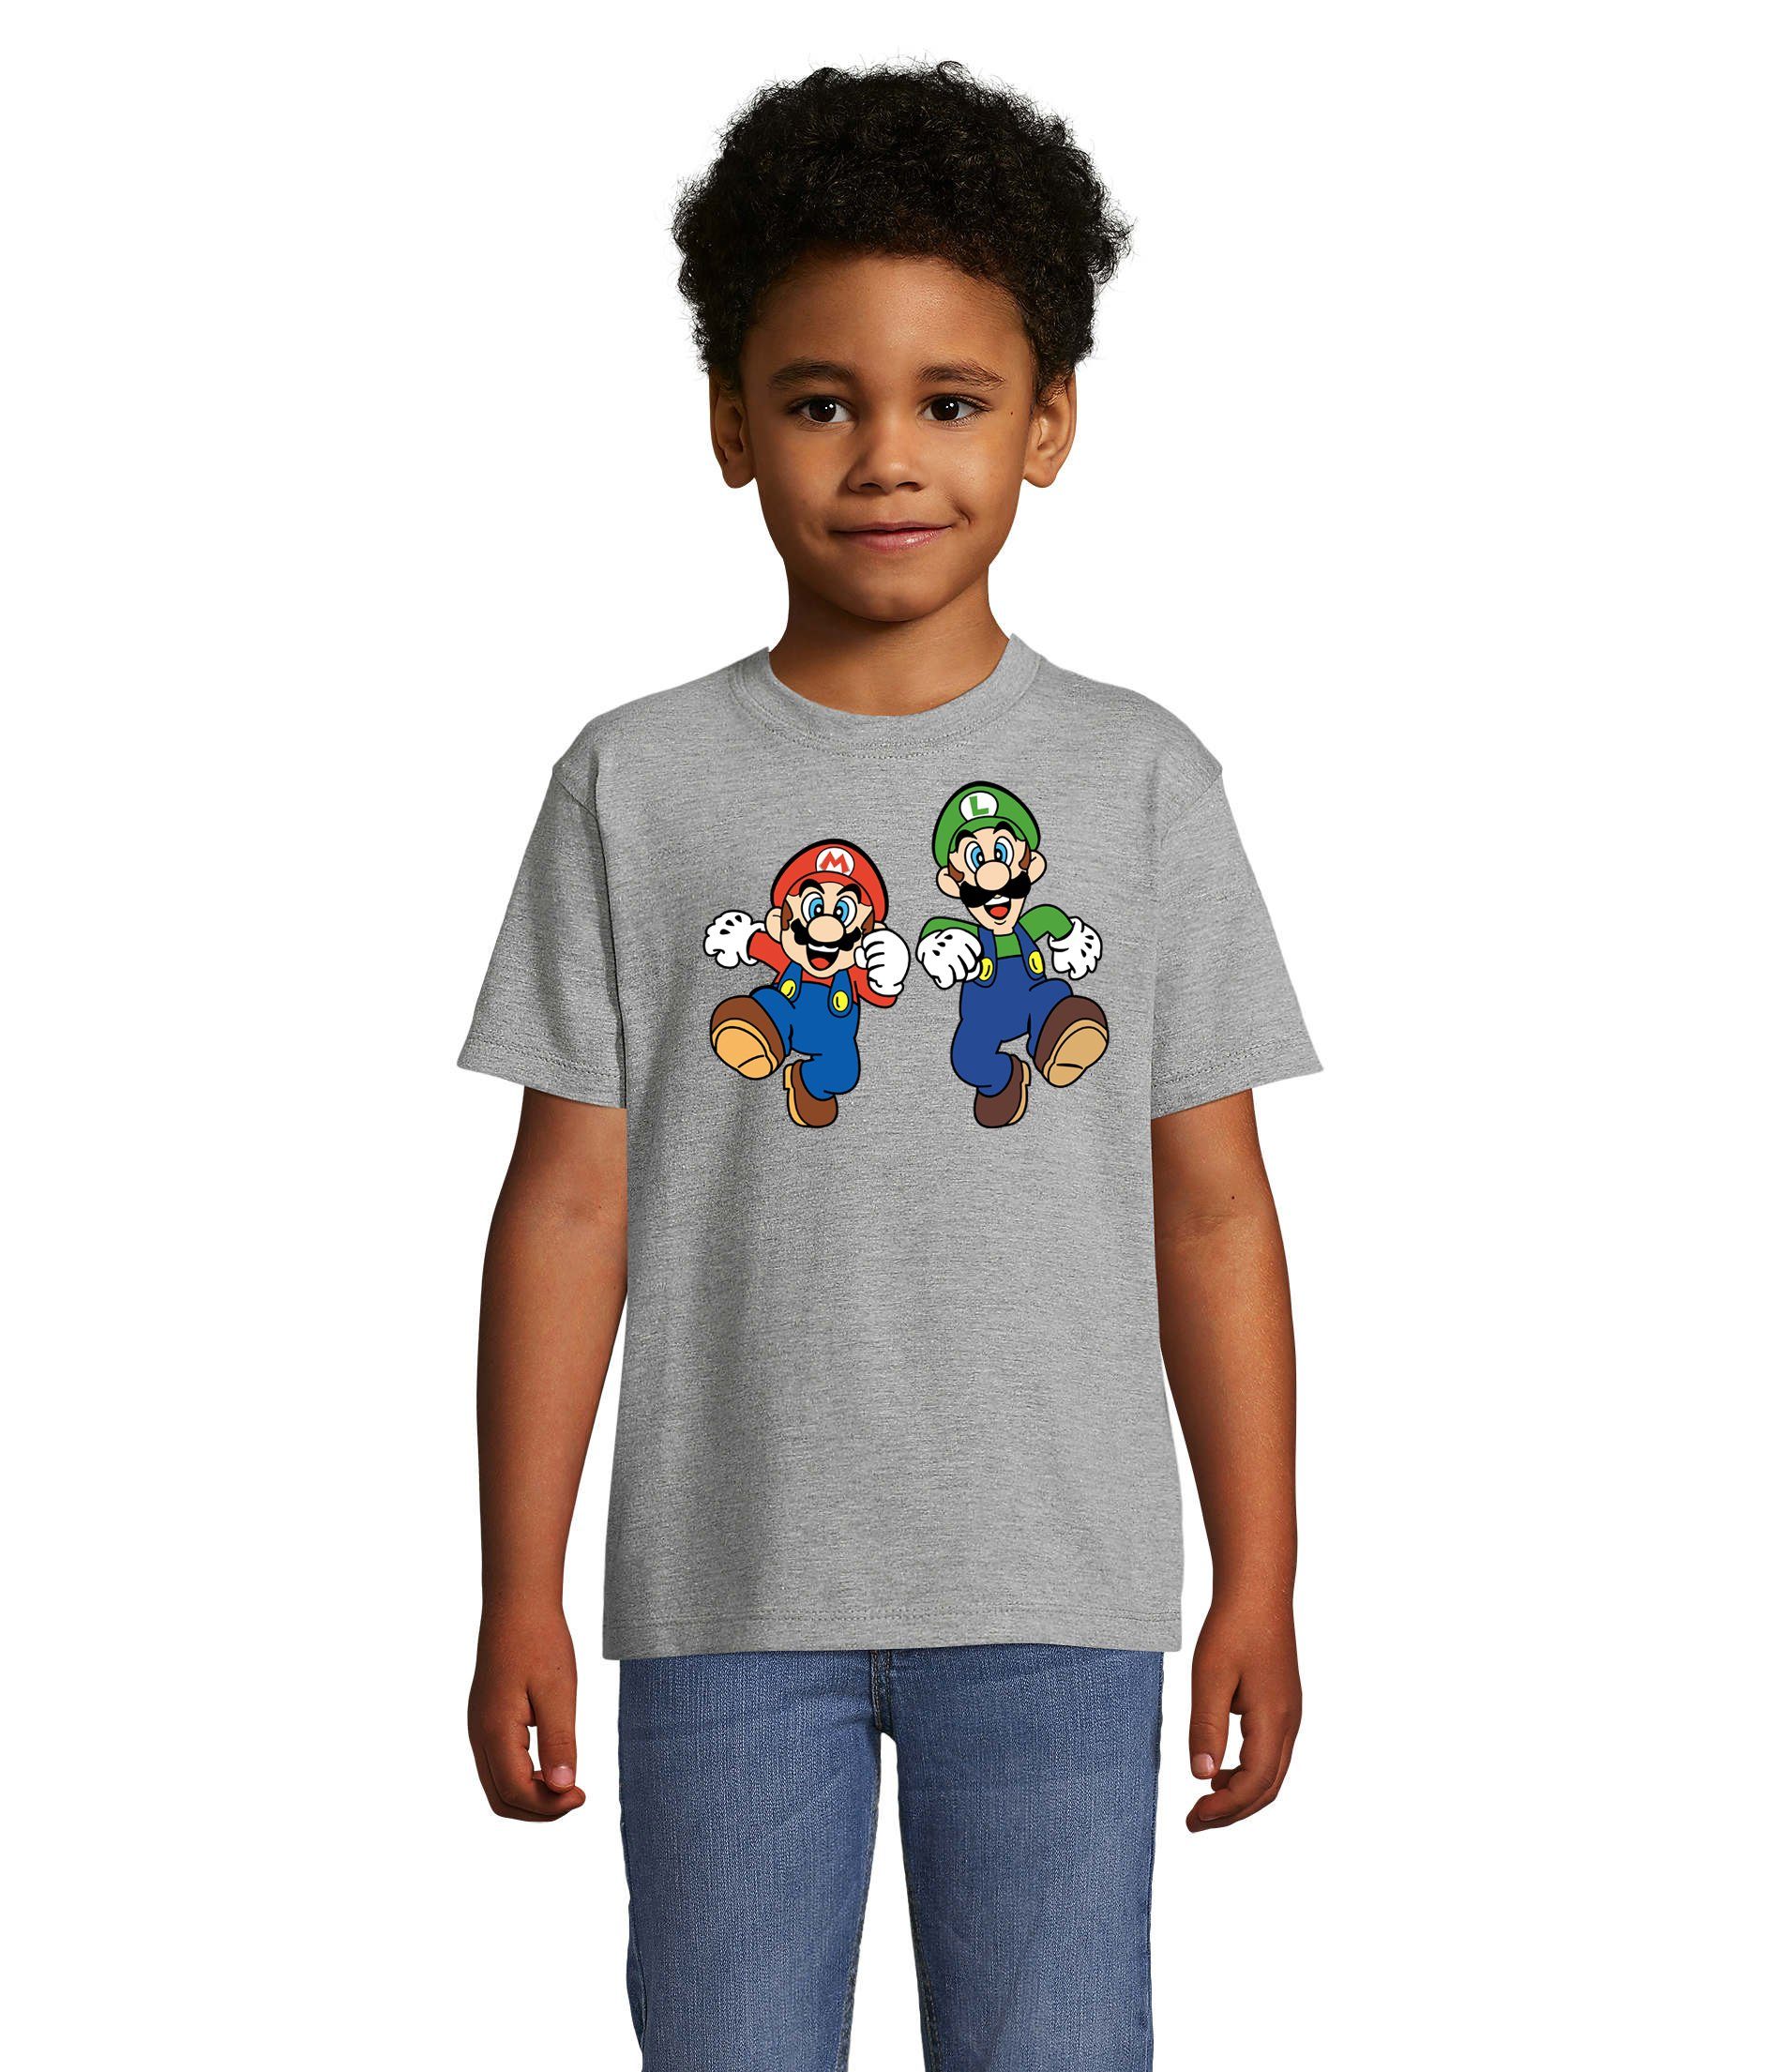 Blondie & Brownie T-Shirt Kinder Mario & Luigi Bowser Nintendo Yoshi Game Gamer Konsole Grau